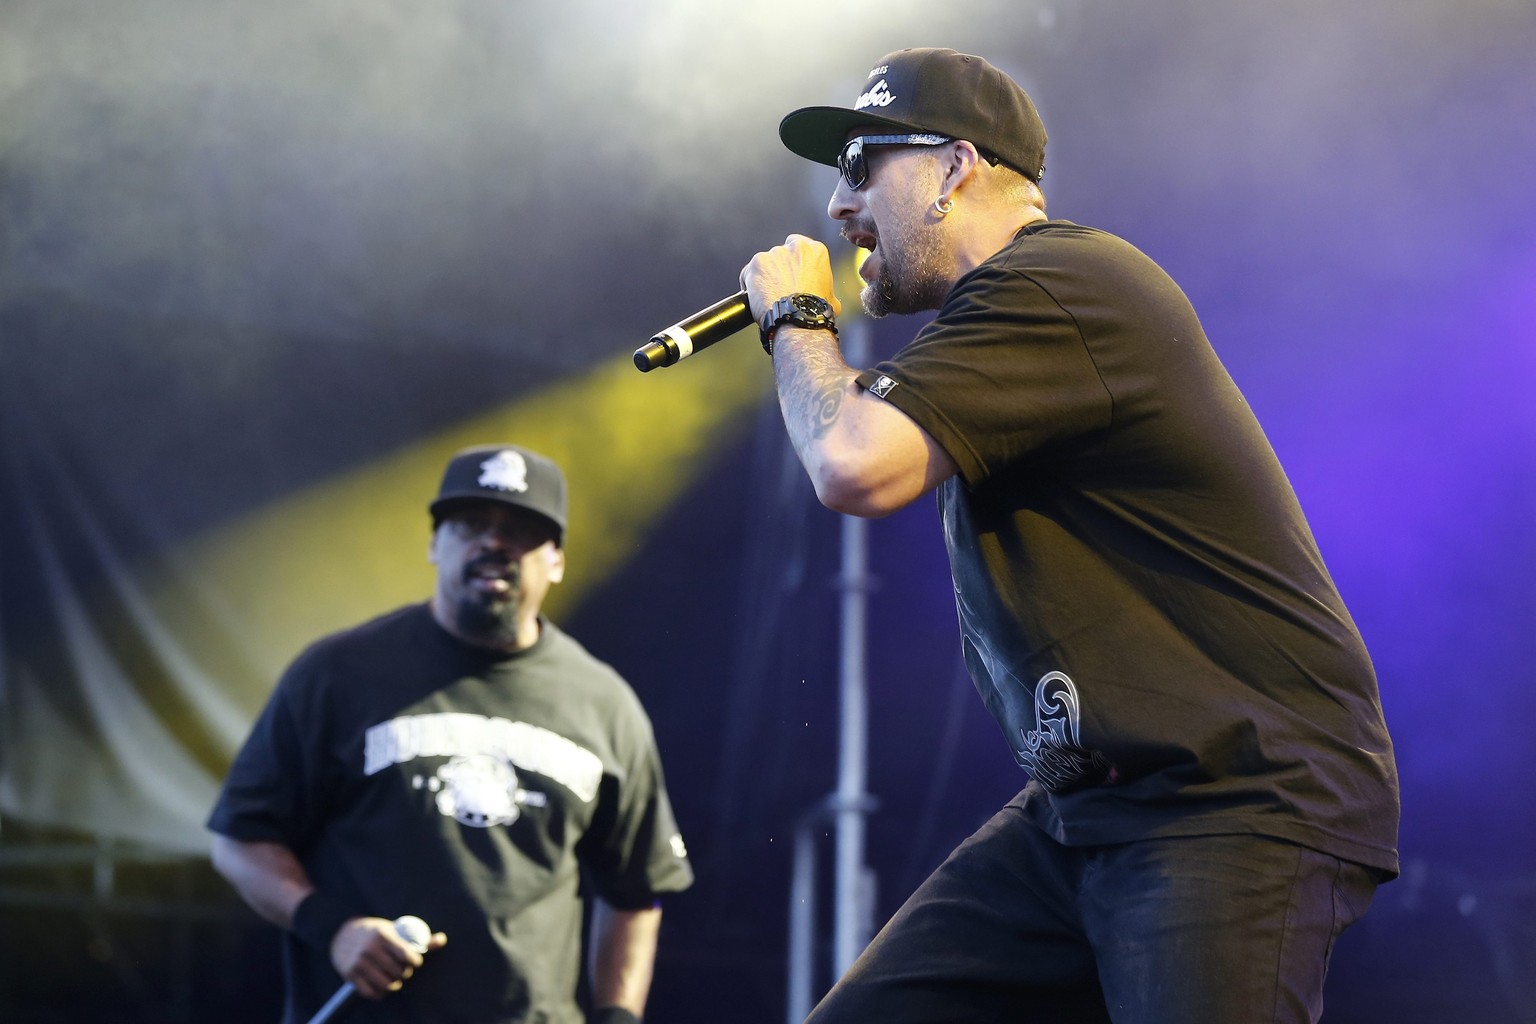 Cypress Hill.